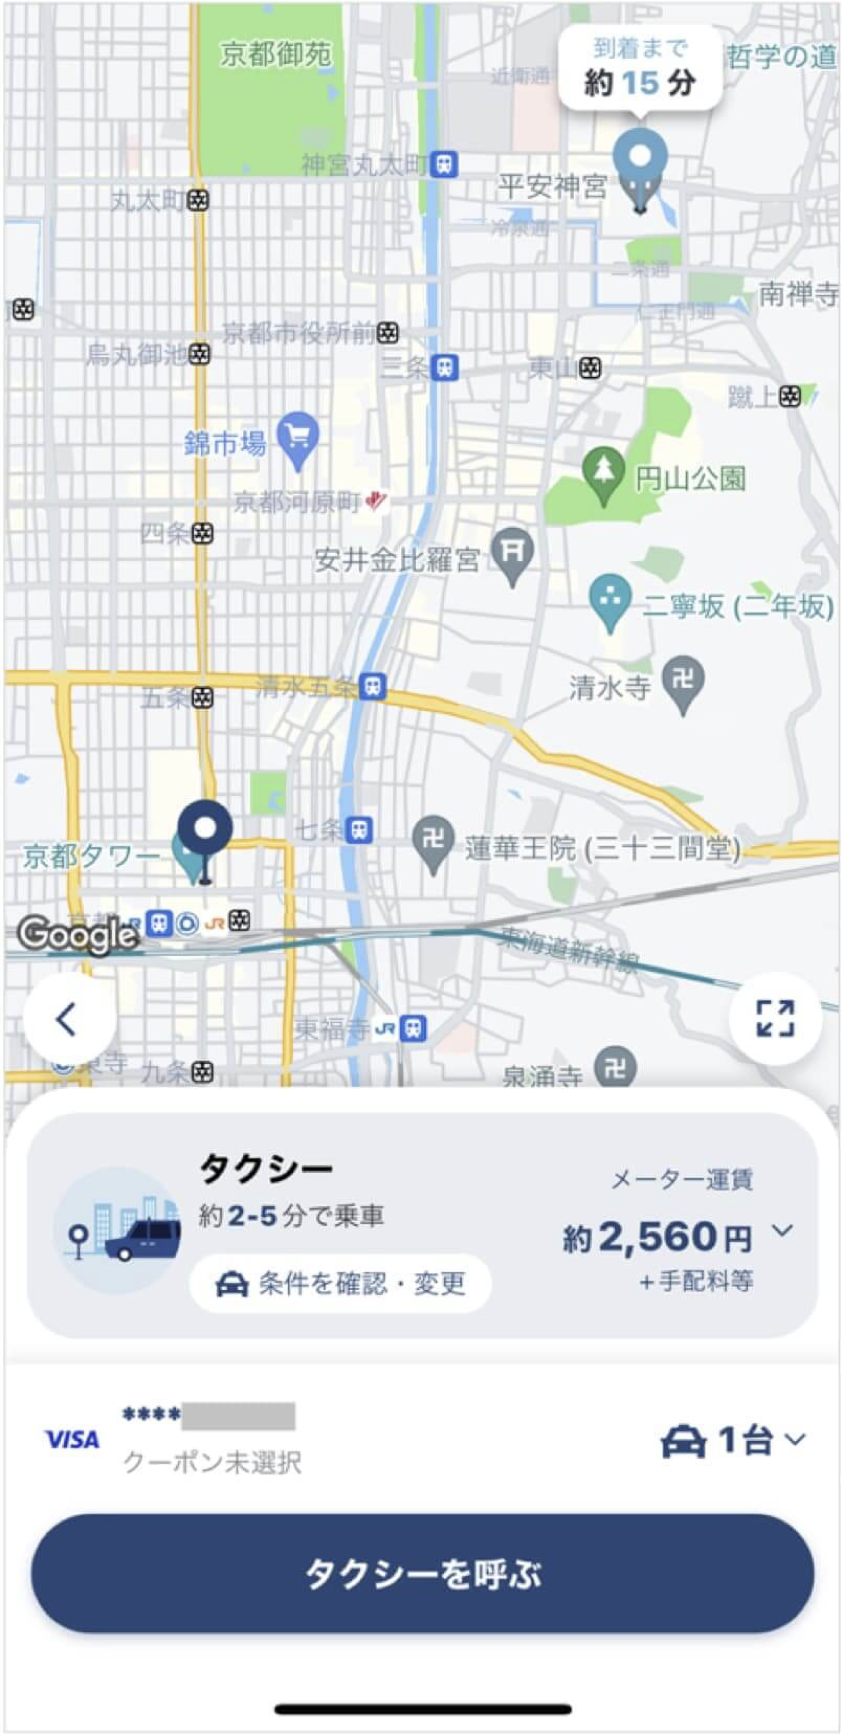 京都駅から平安神宮までのタクシー料金・所要時間まとめ